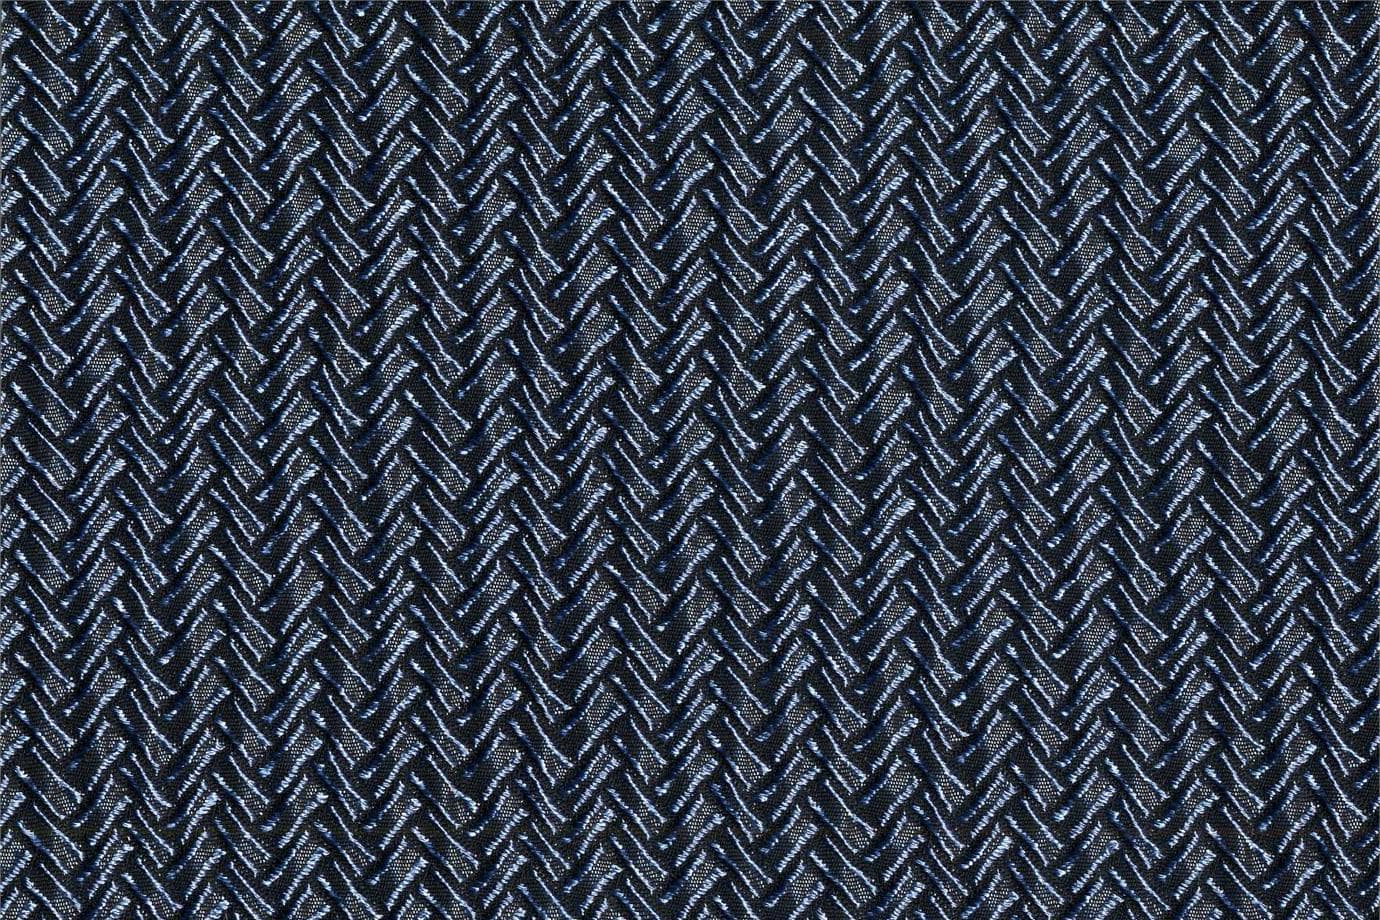 J1951 SECONDIGLIANO 025 Azzurro home decoration fabric